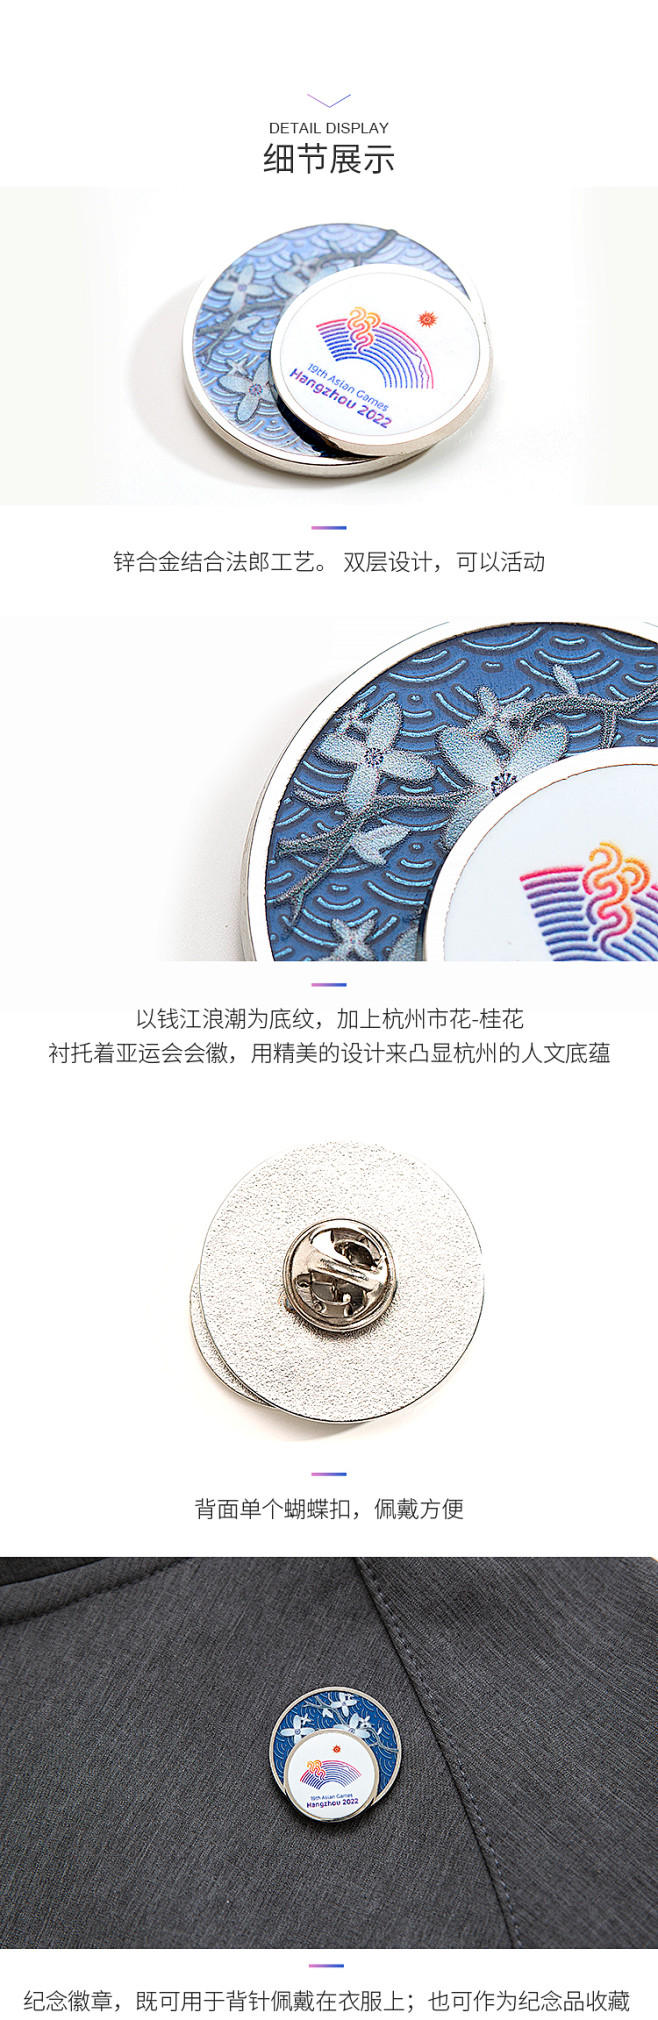 杭州亚运会 双层蓝桂会徽徽章文化创意纪念...